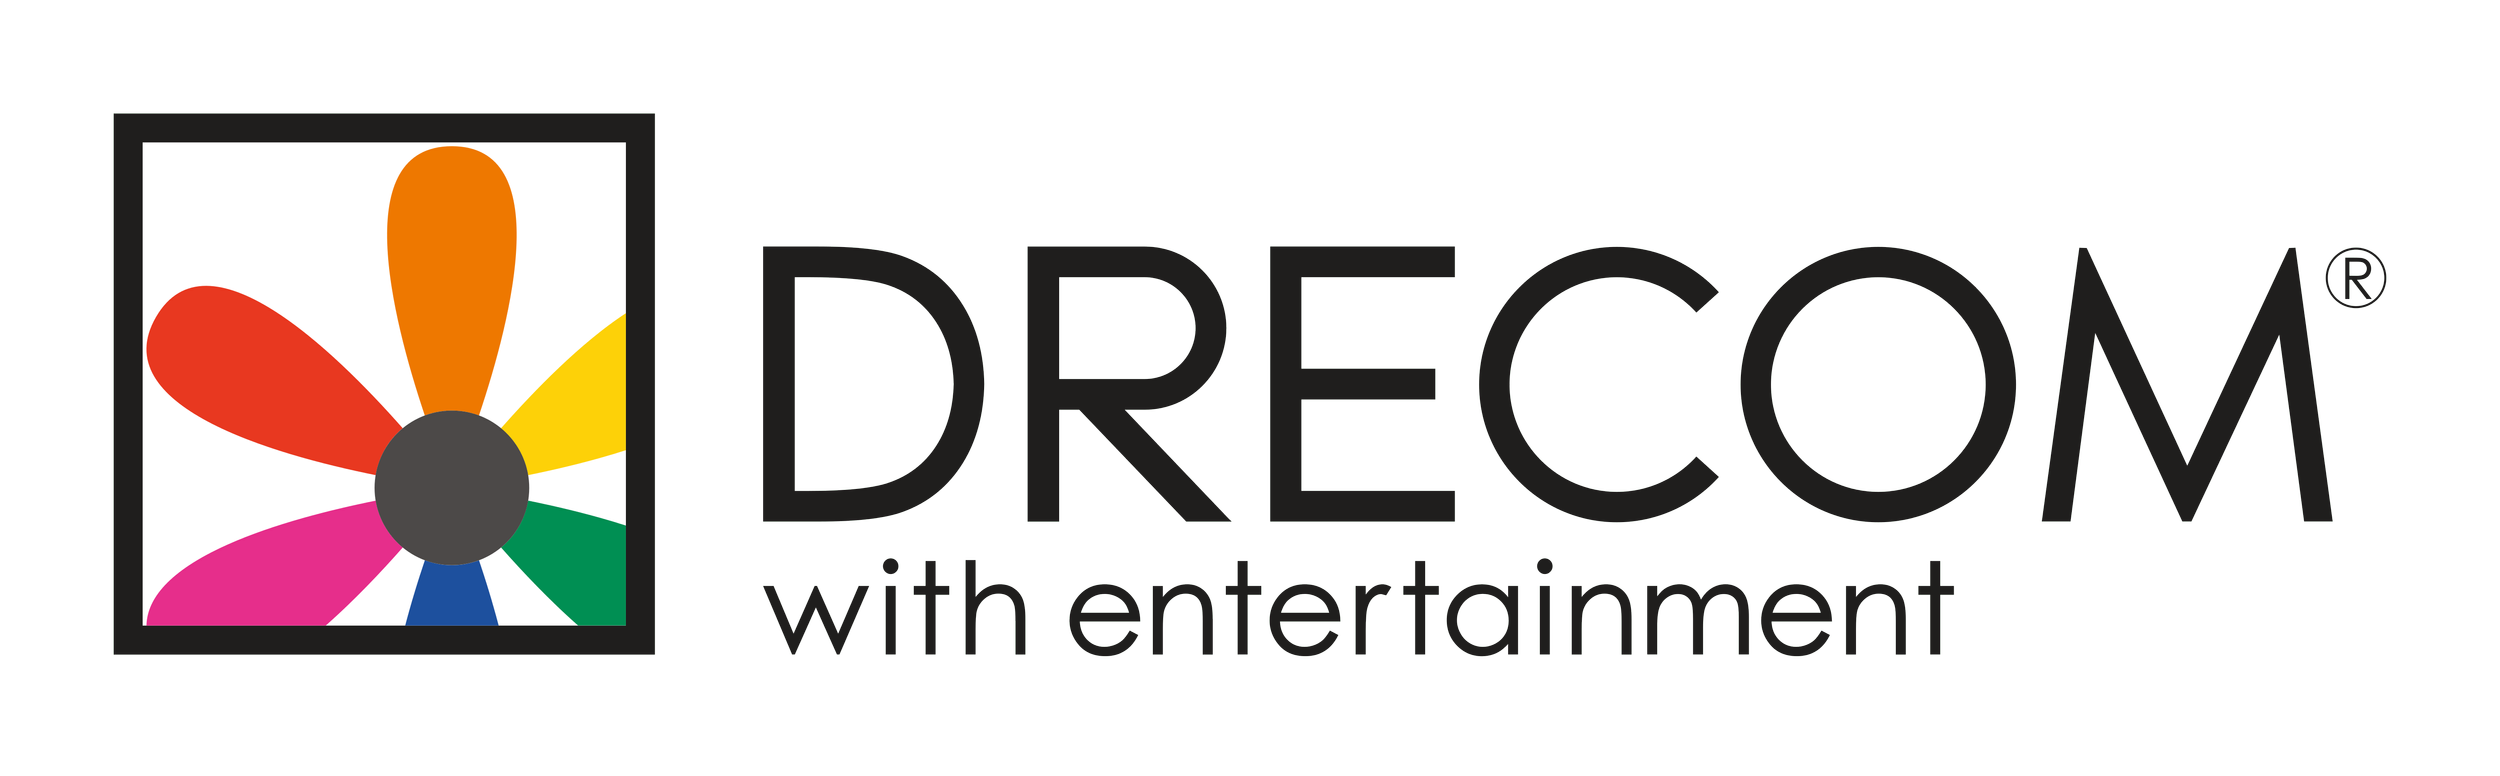 Company-Logo_Drecom.png